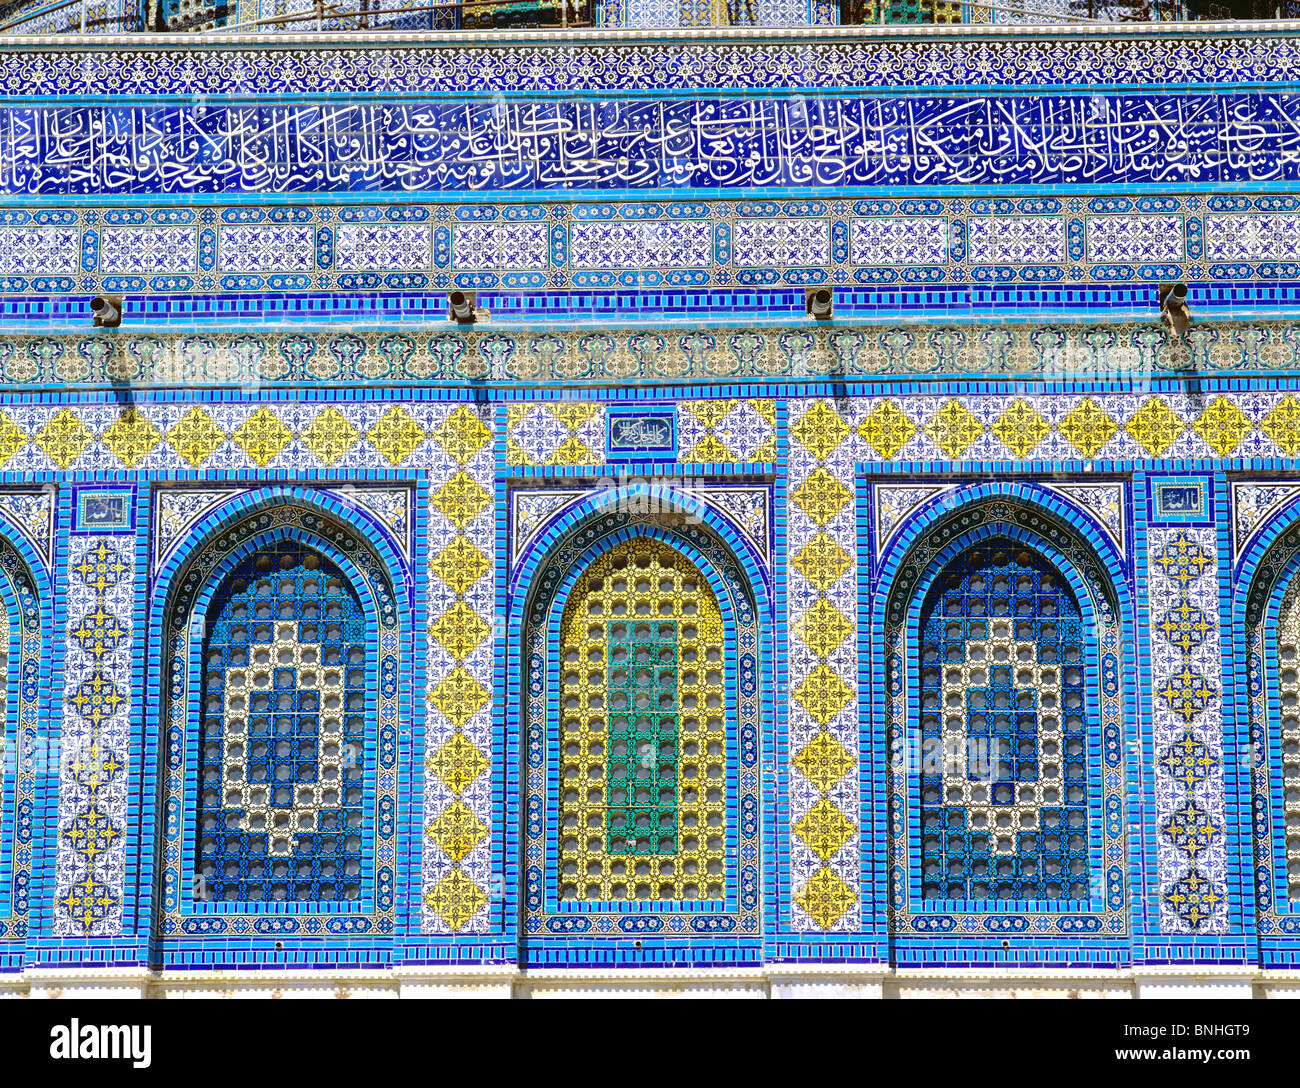 Israel, Jerusalén, la cúpula de la roca del monte del templo sagrado del Islam arquitectura islámica fachada detalle de mosaico Foto de stock